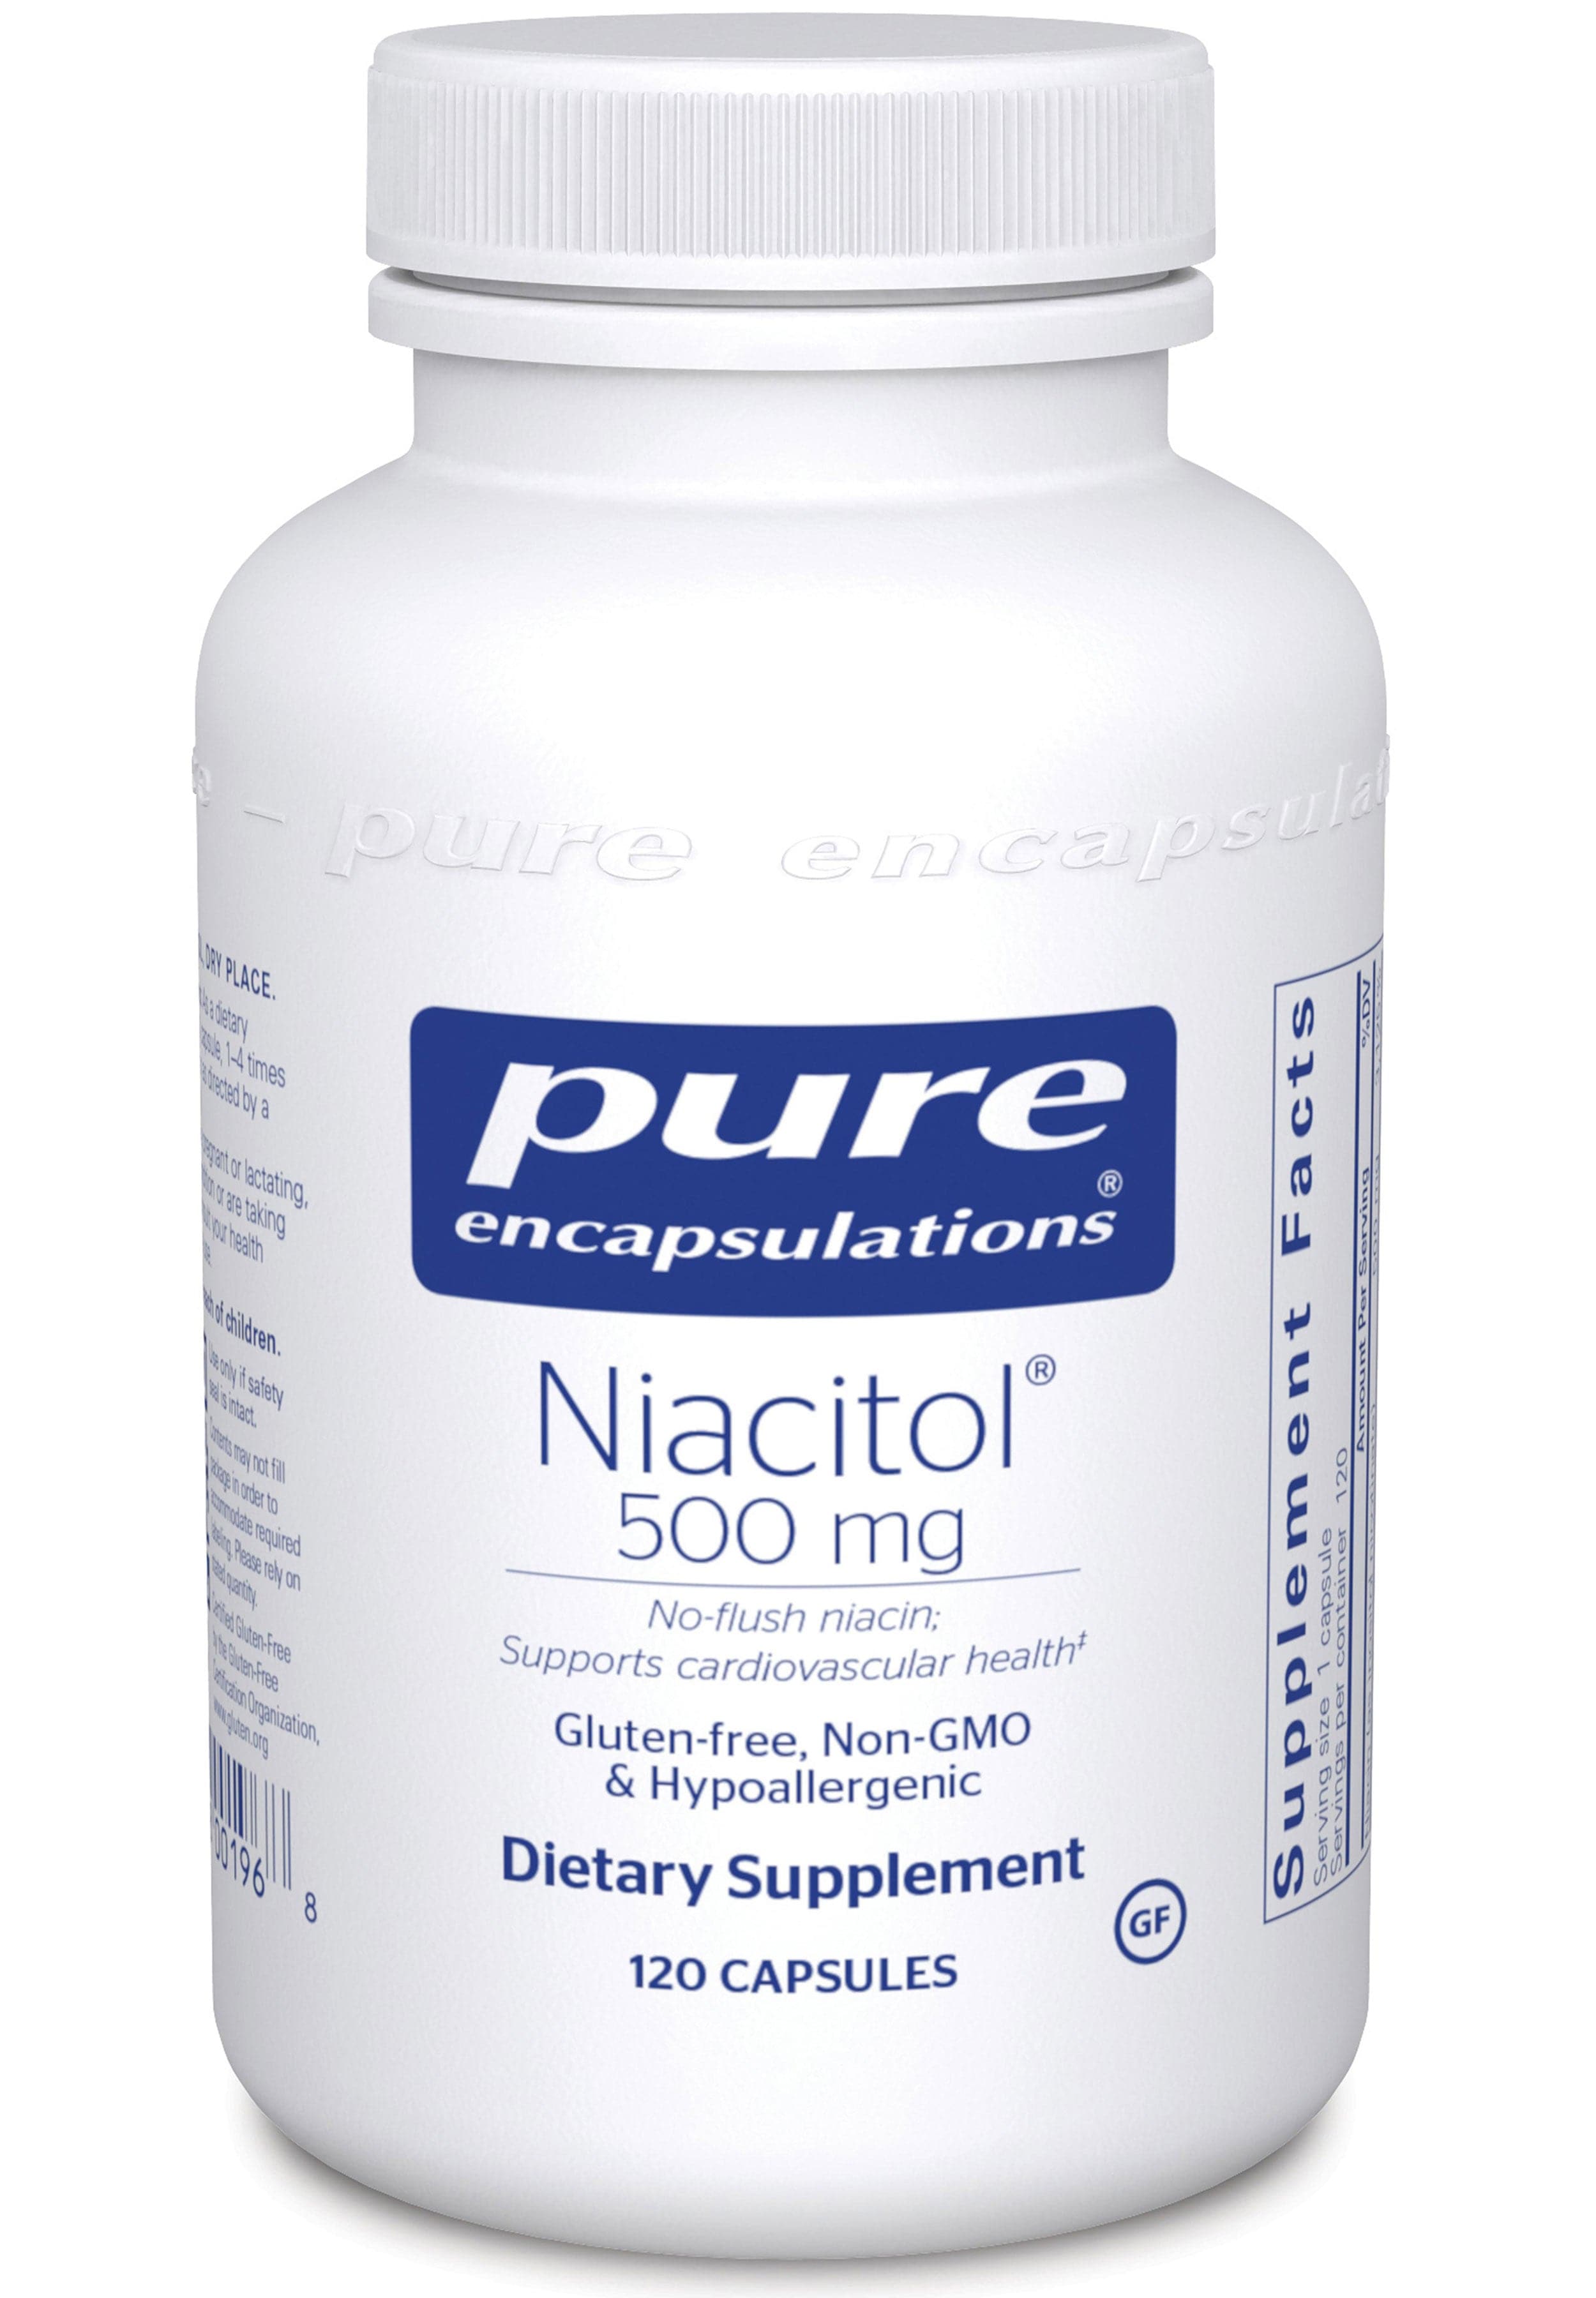 Pure Encapsulations Niacitol 500 mg